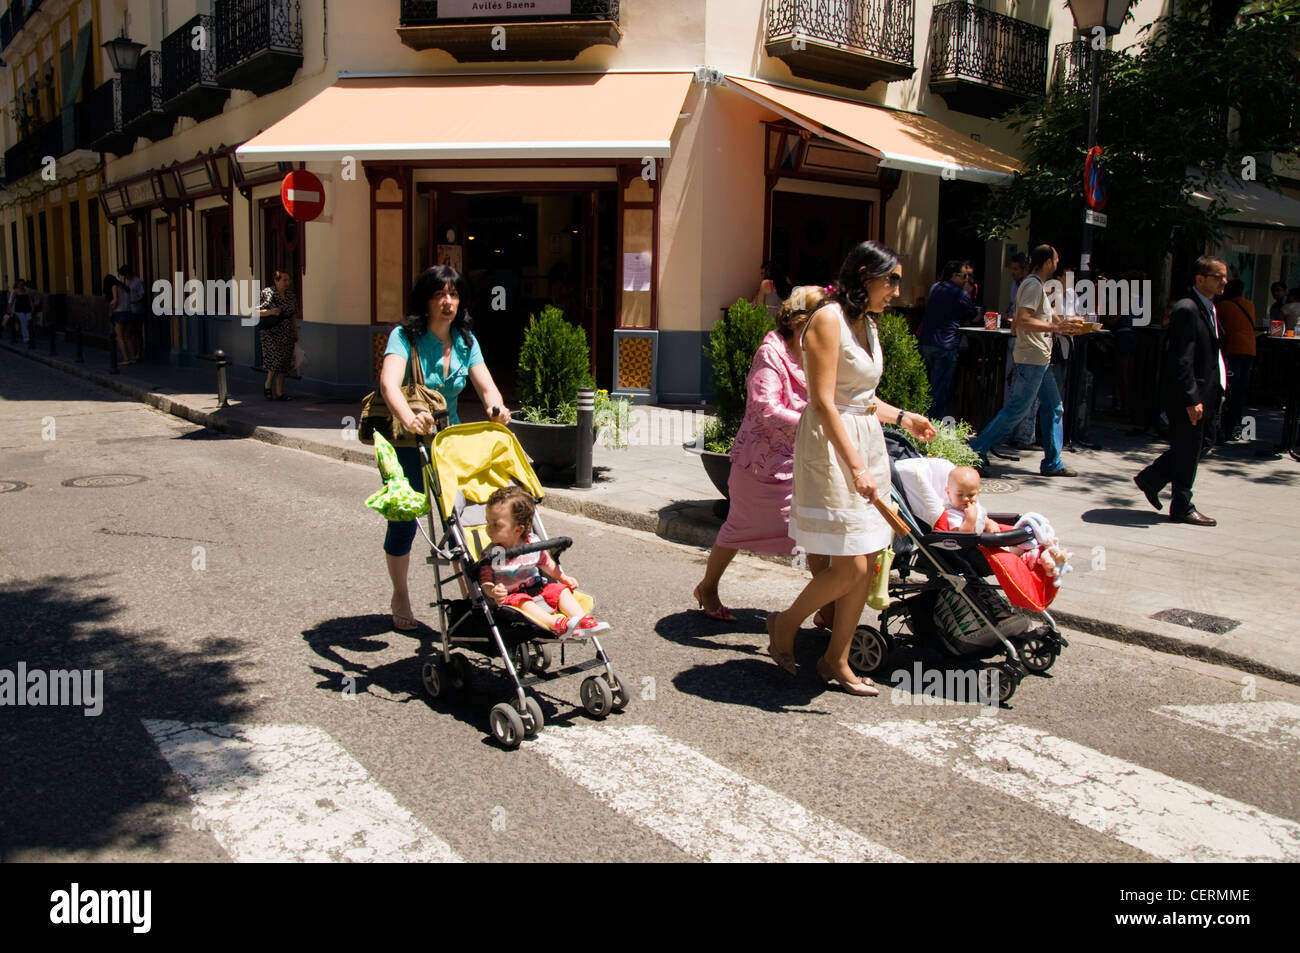 La femme espagnole avec des bébés de jeunes enfants en poussette Banque D'Images